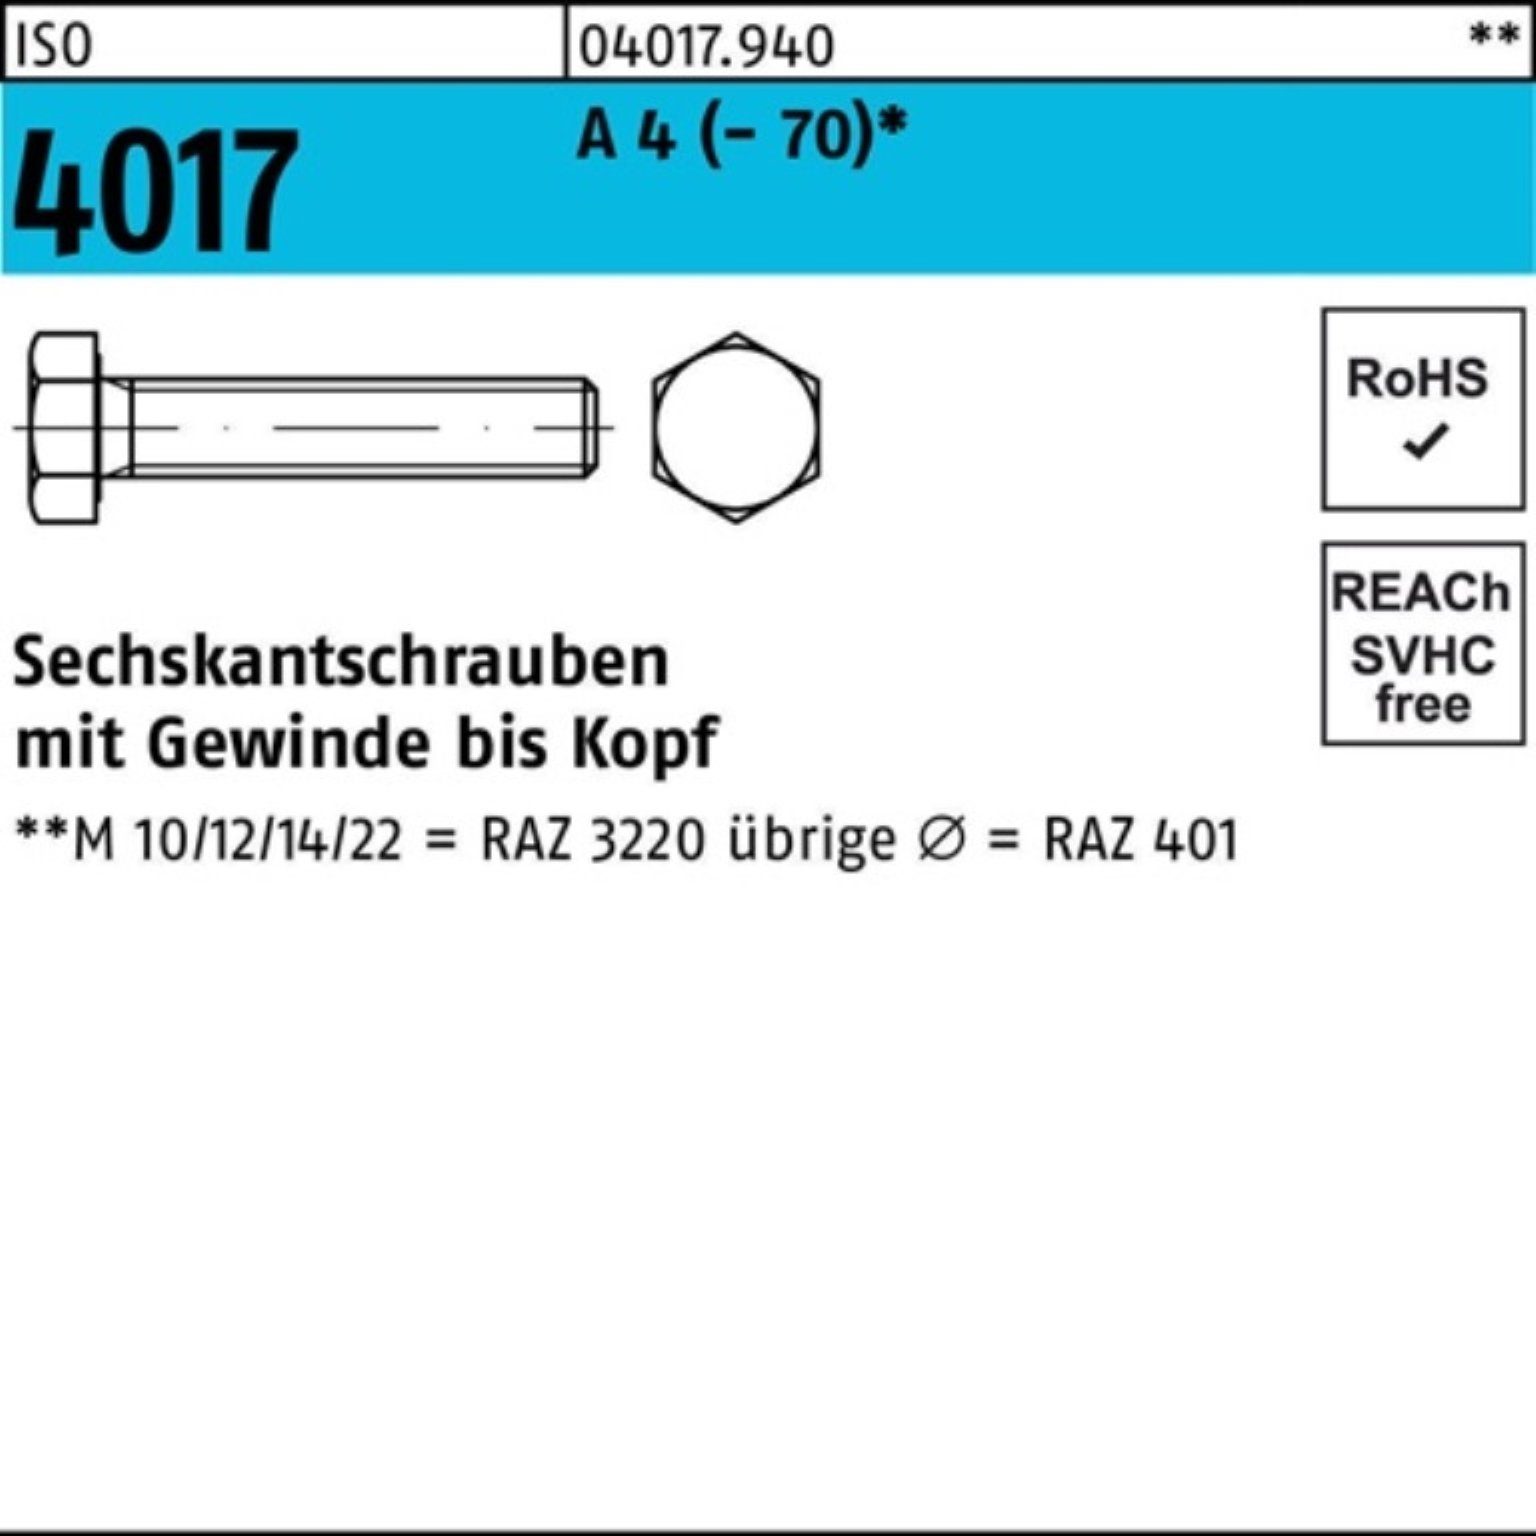 Bufab Sechskantschraube Pack 4017 M6x Stück 200er 200 40 4 A (70) VG Sechskantschraube ISO